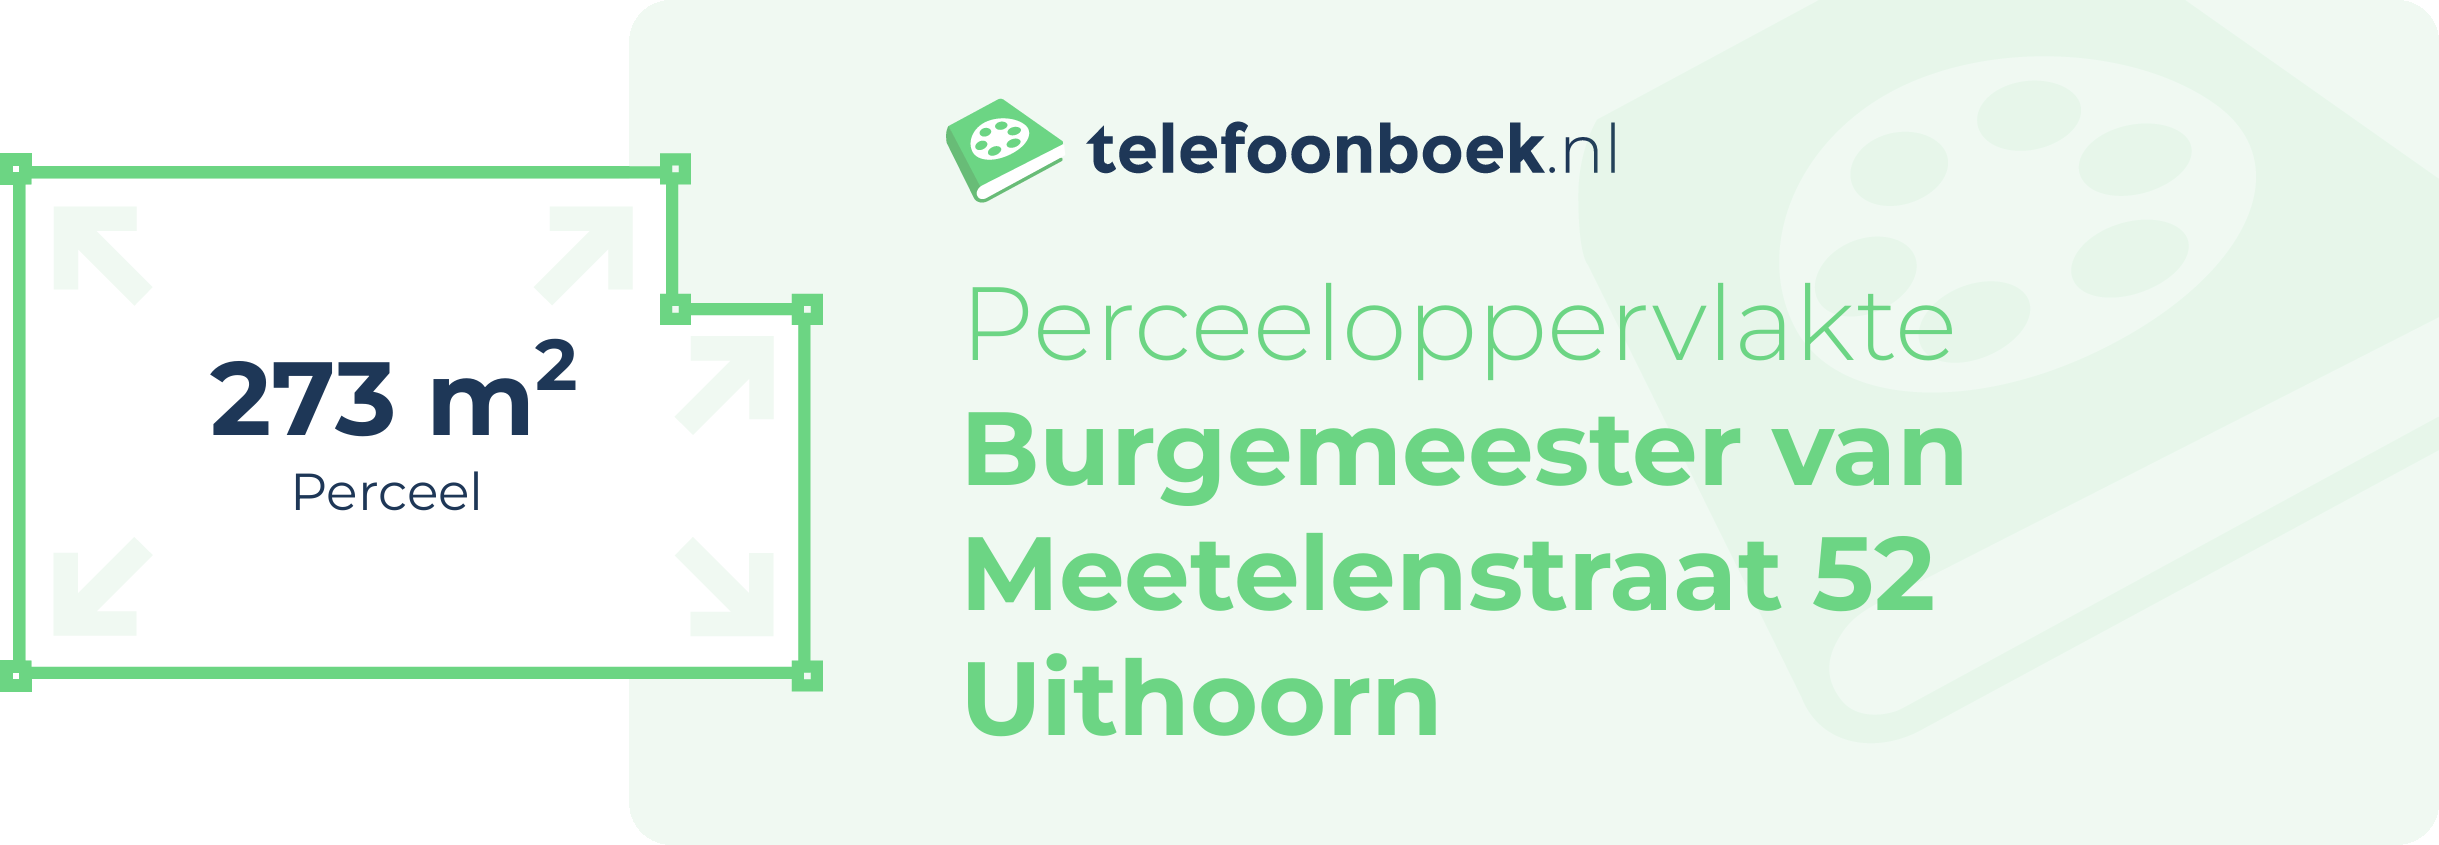 Perceeloppervlakte Burgemeester Van Meetelenstraat 52 Uithoorn